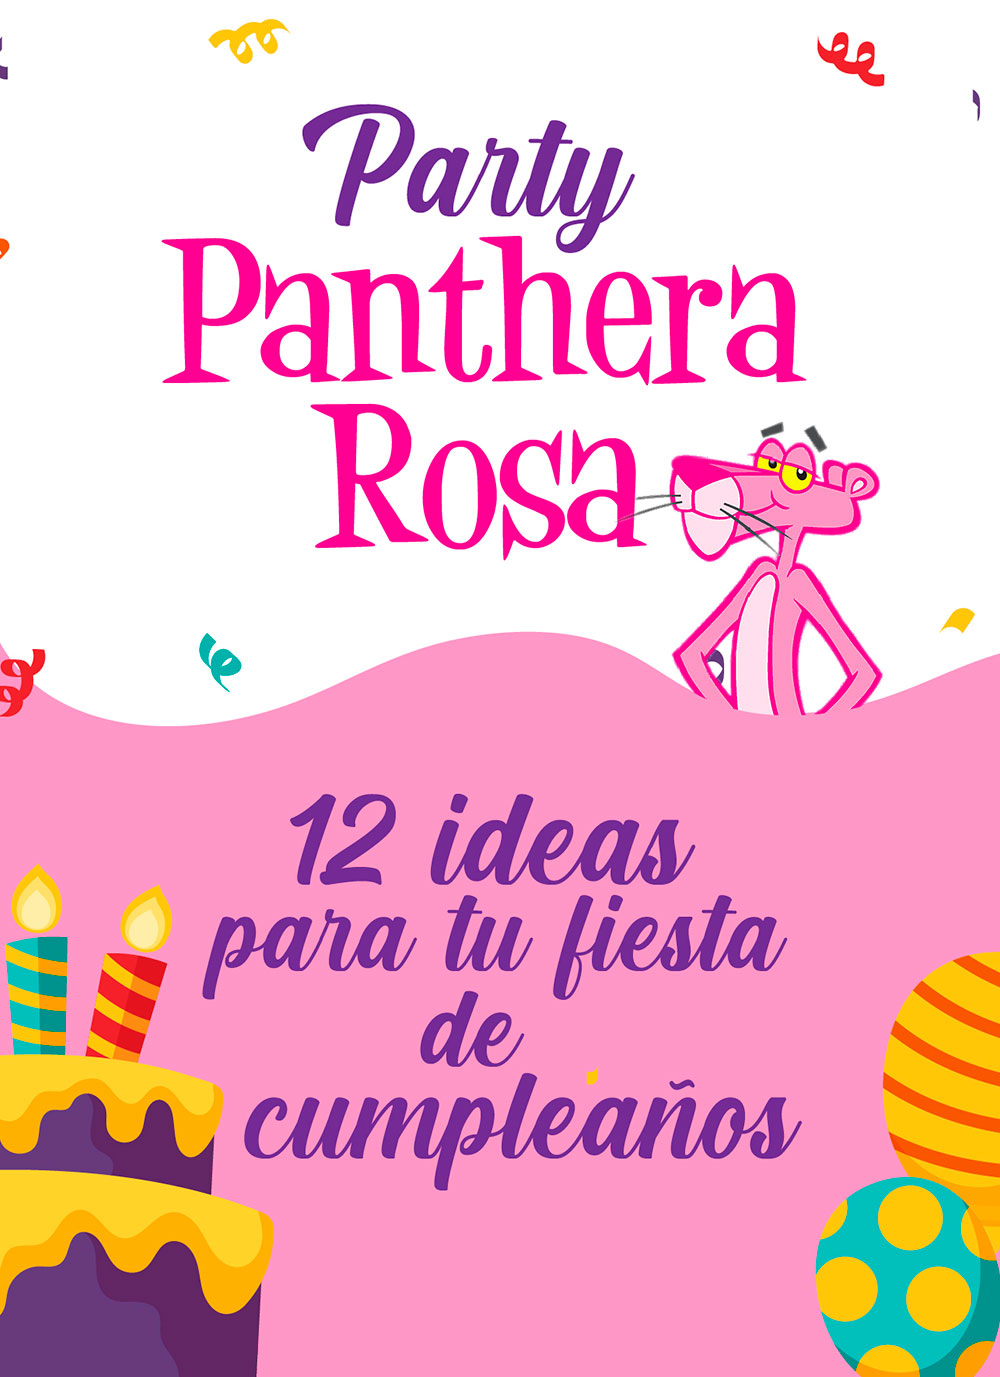 Party Pantera Rosa: 12 ideas para tu fiesta de cumpleaños.